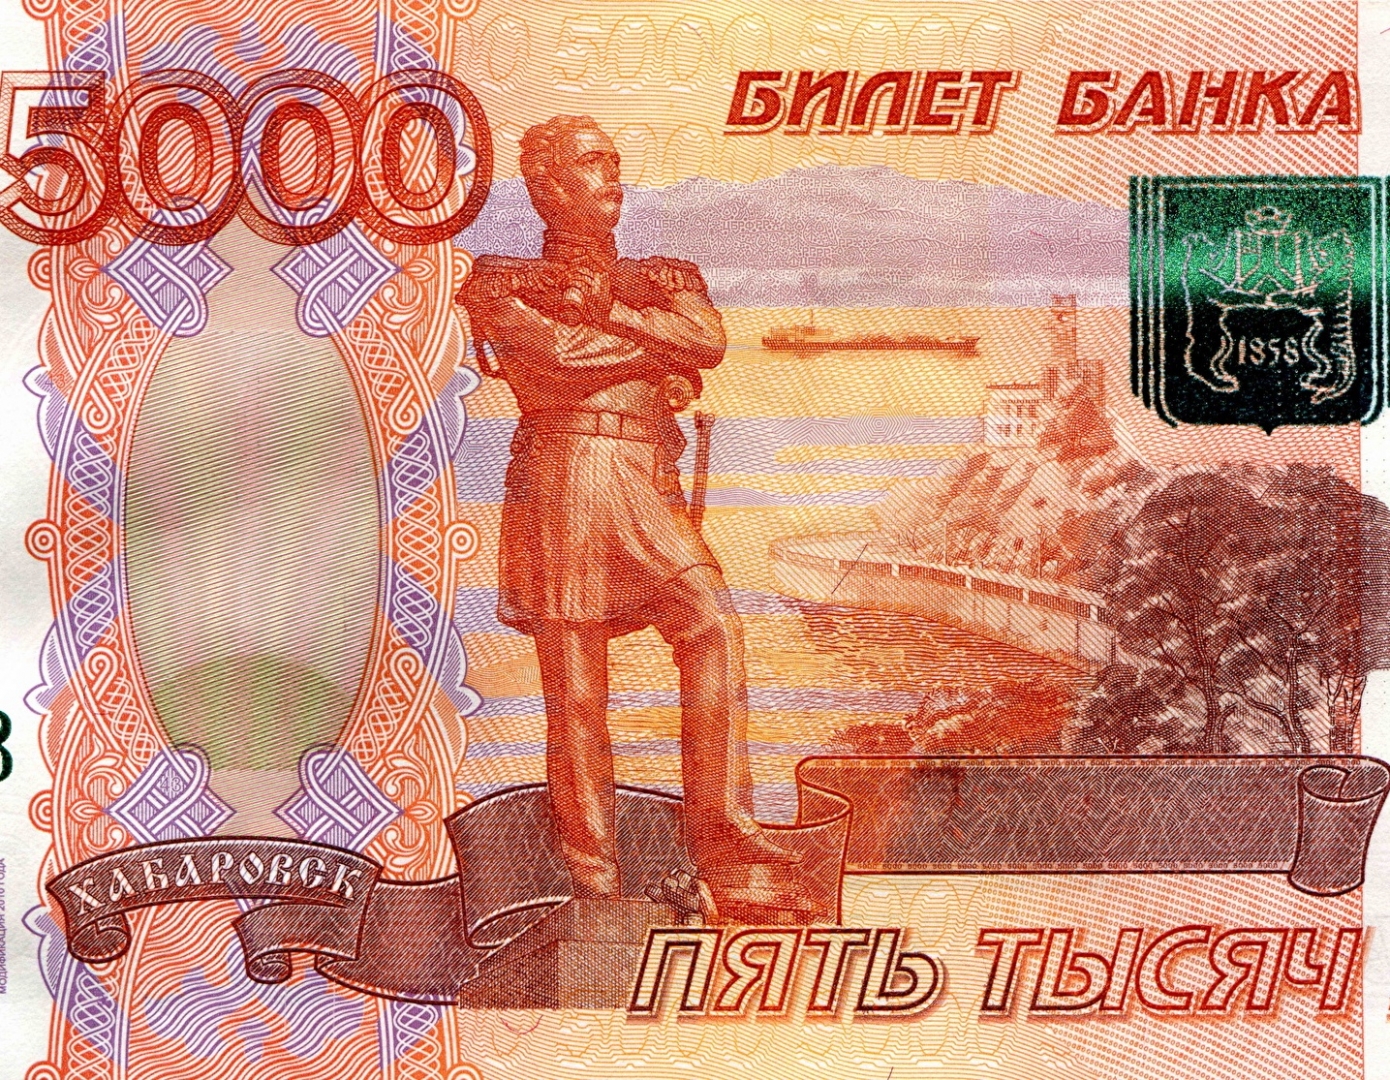 фото 5000 рублей 1997